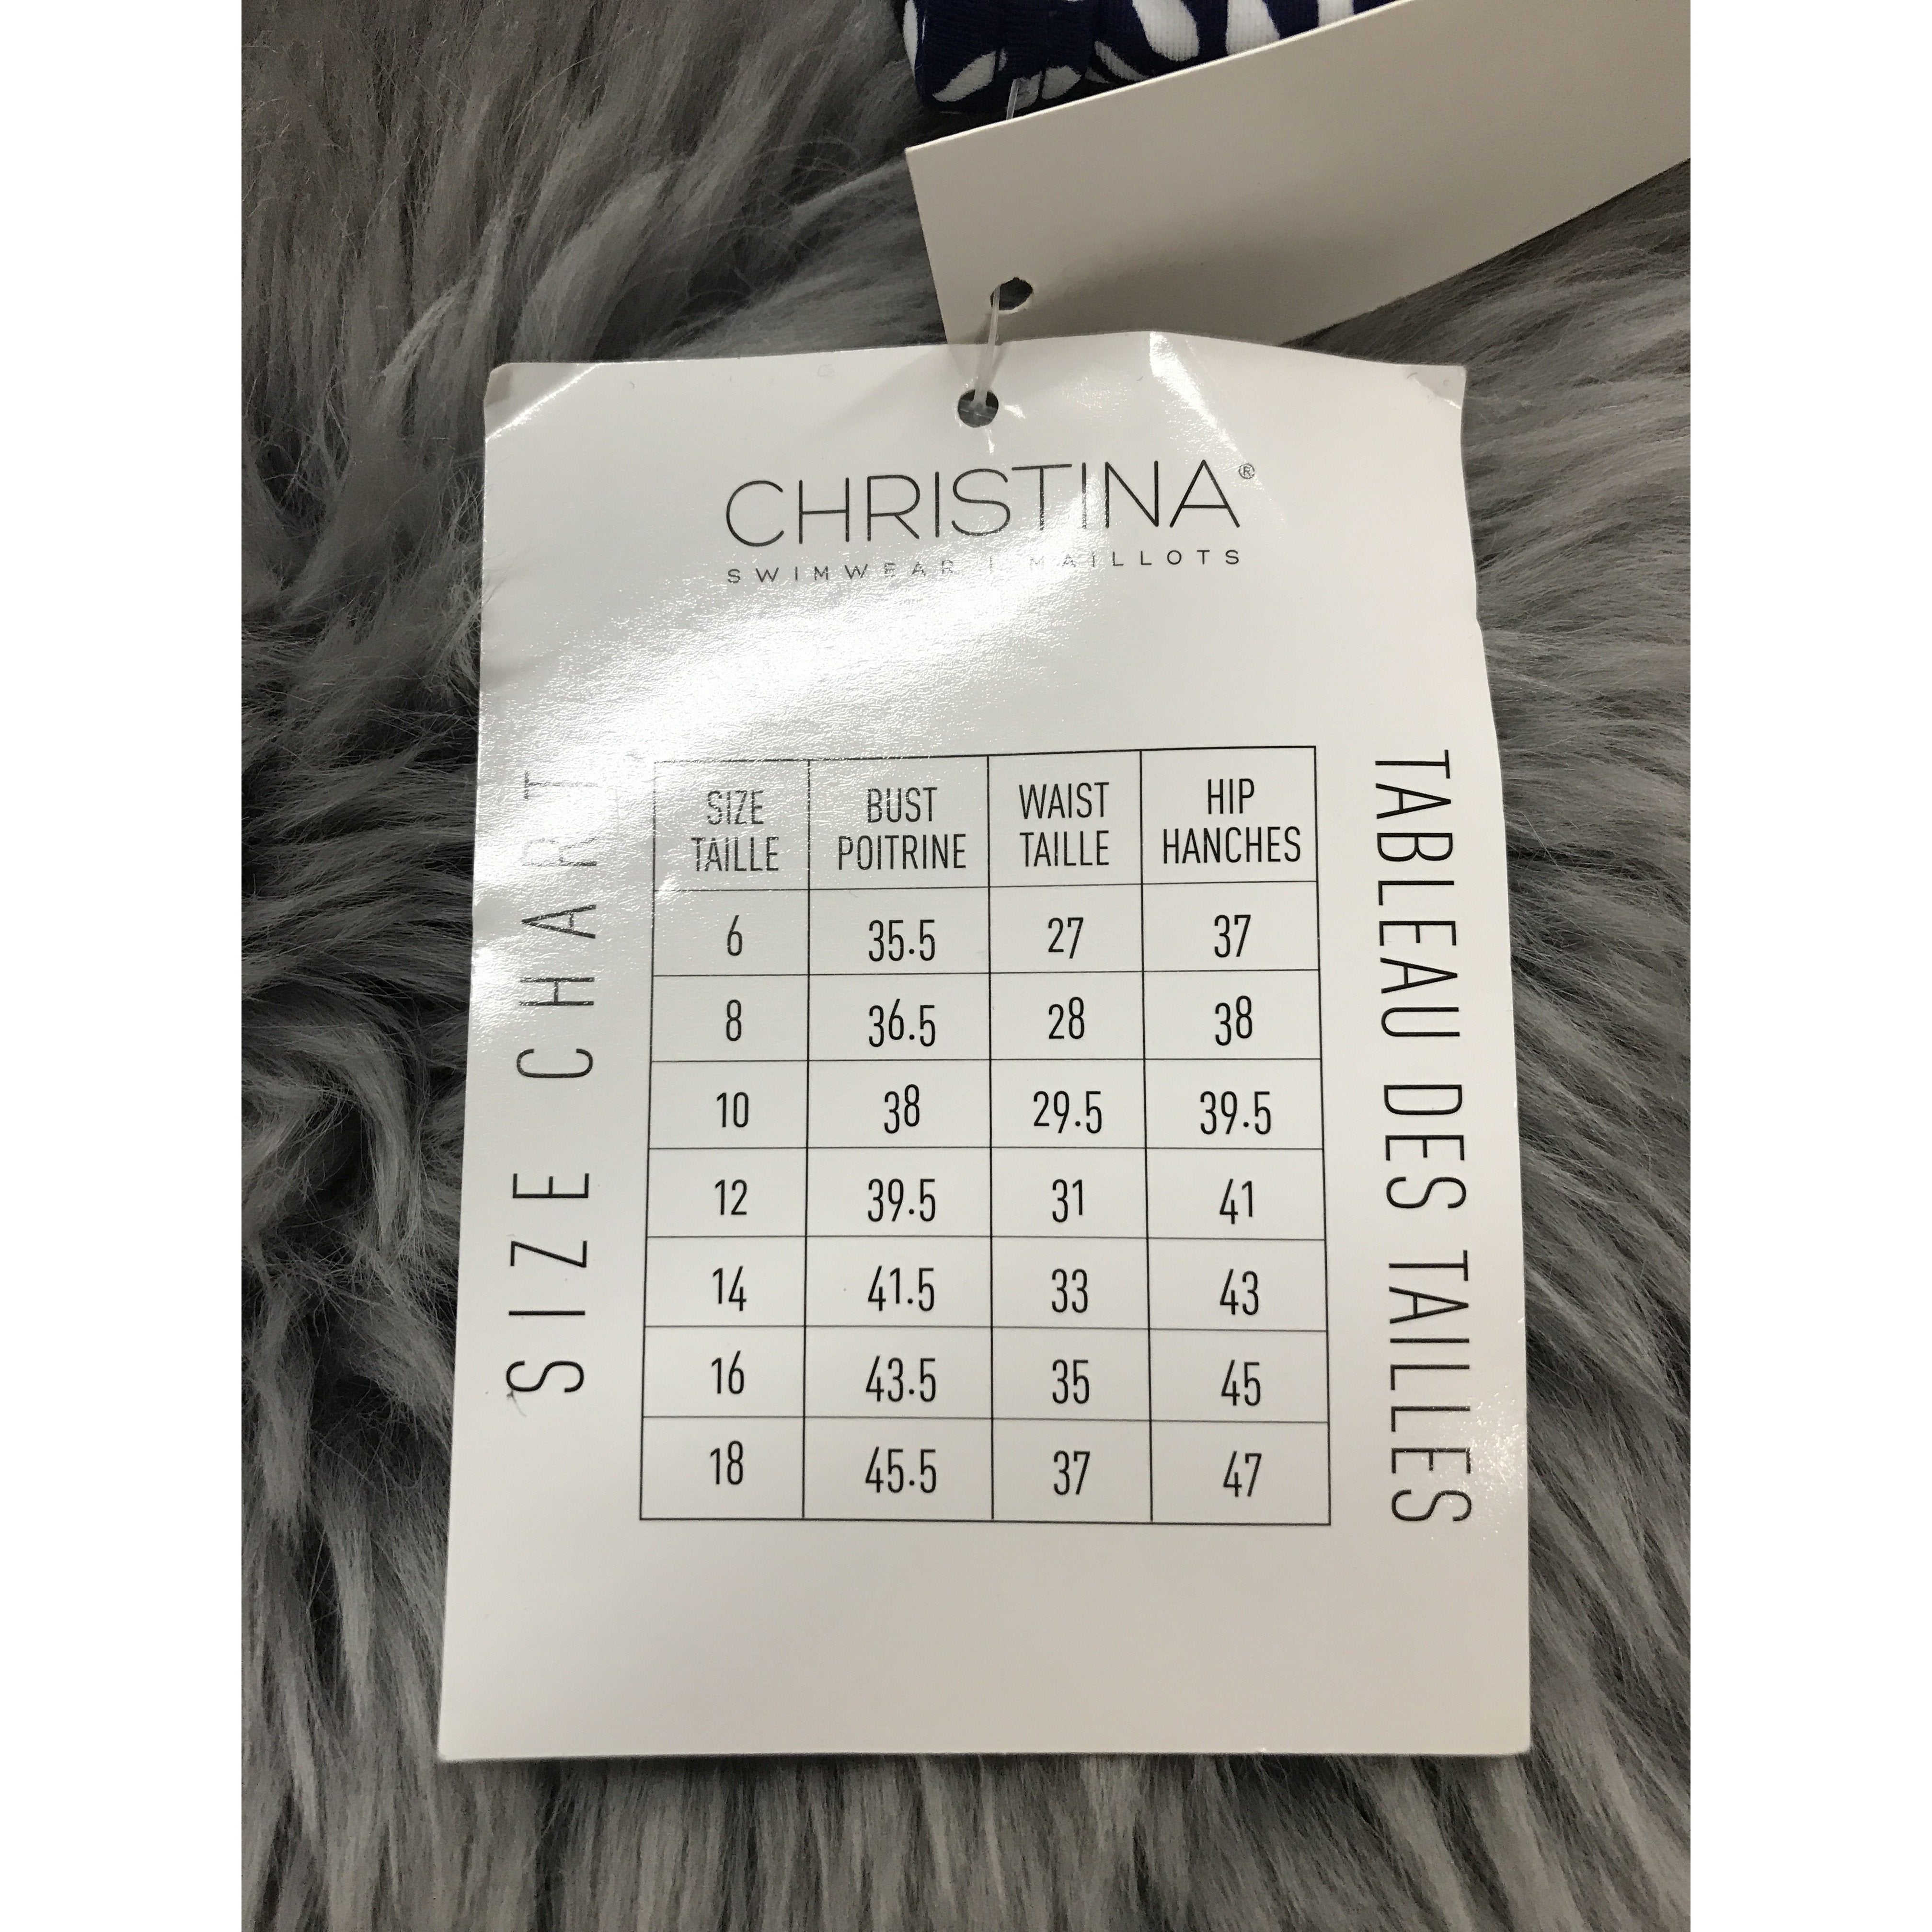 Christina Women's Bathing Suit Top: Multi- Colour/ Size 12